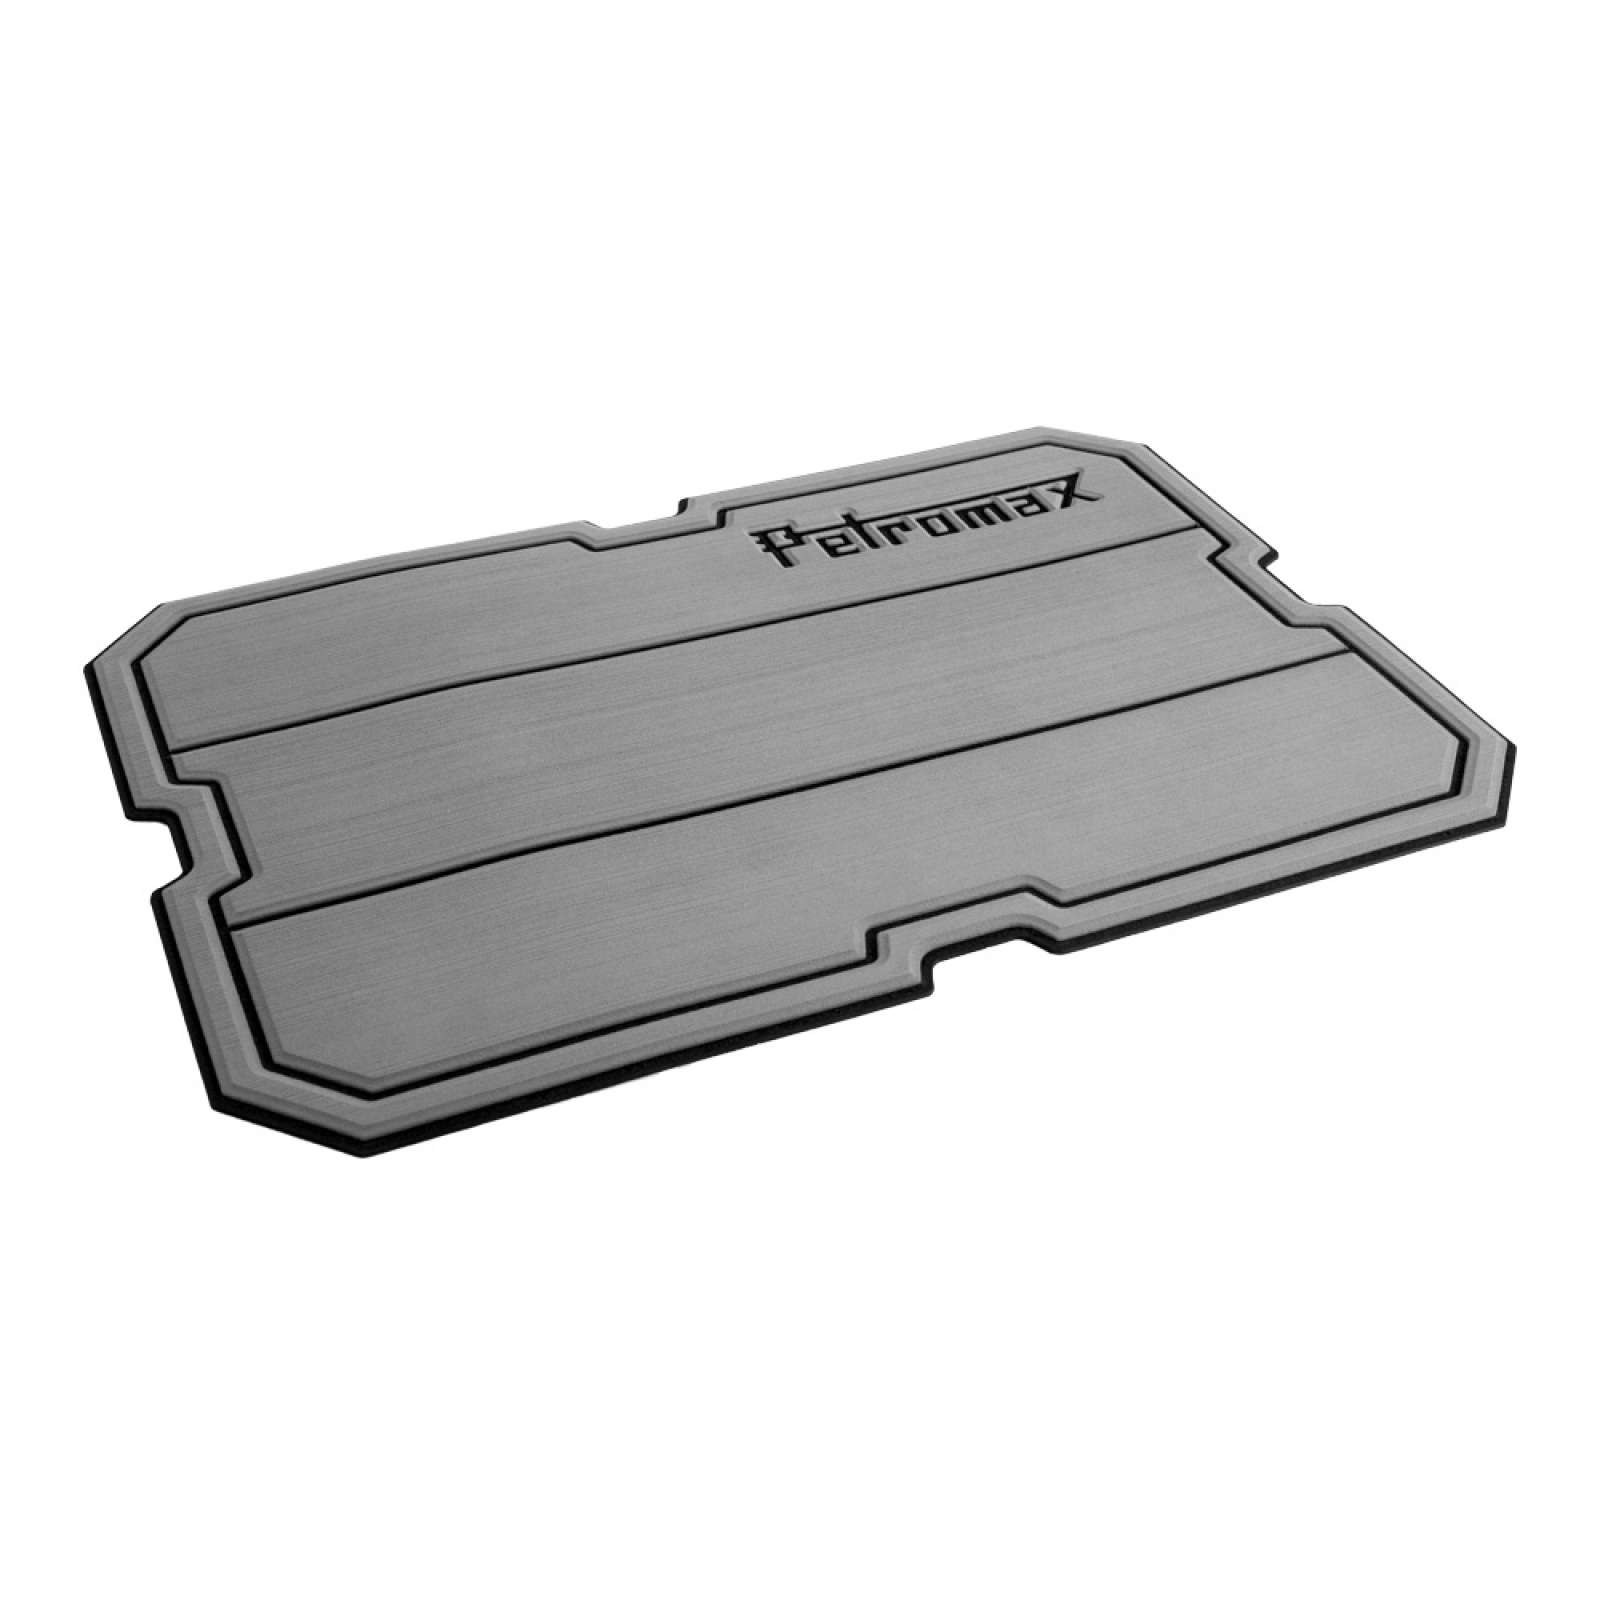 Petromax Haft-Auflage für Kühlbox kx25 Grau mit Linien und Petromax Schriftzug für 25 Liter Box